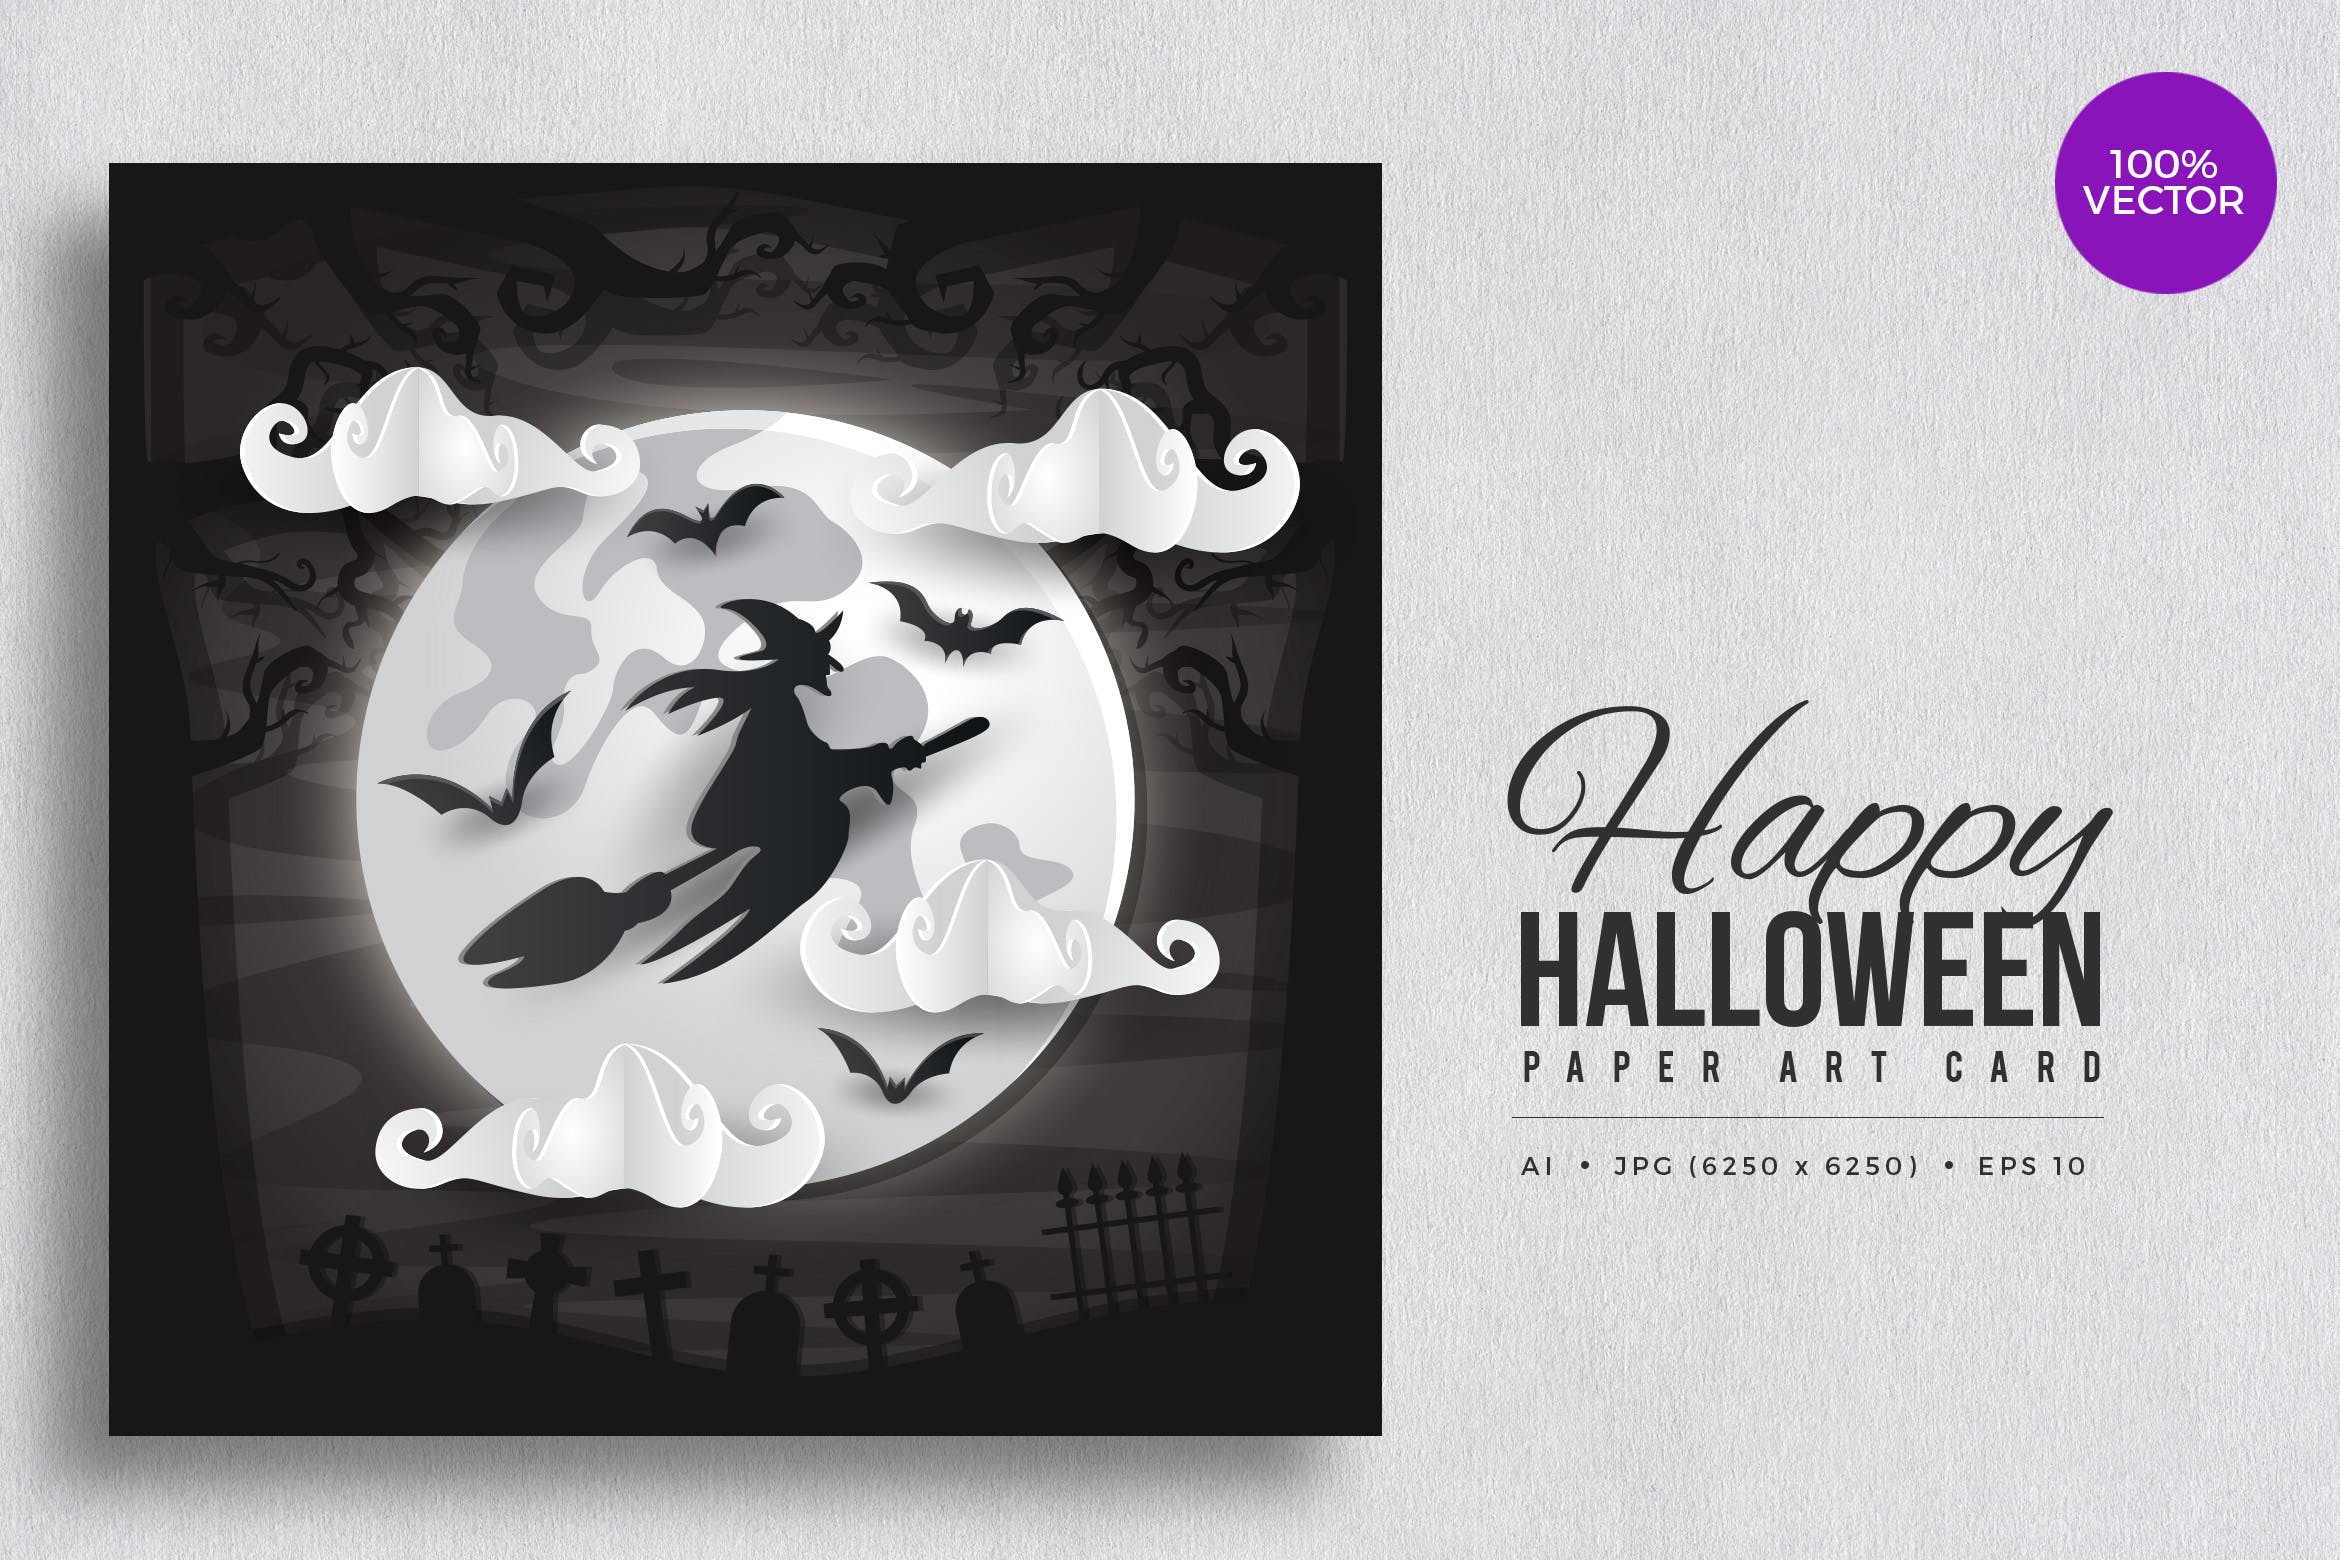 万圣节庆祝主题剪纸艺术矢量插画素材v2 Happy Halloween Paper Art Vector Card Vol.2插图